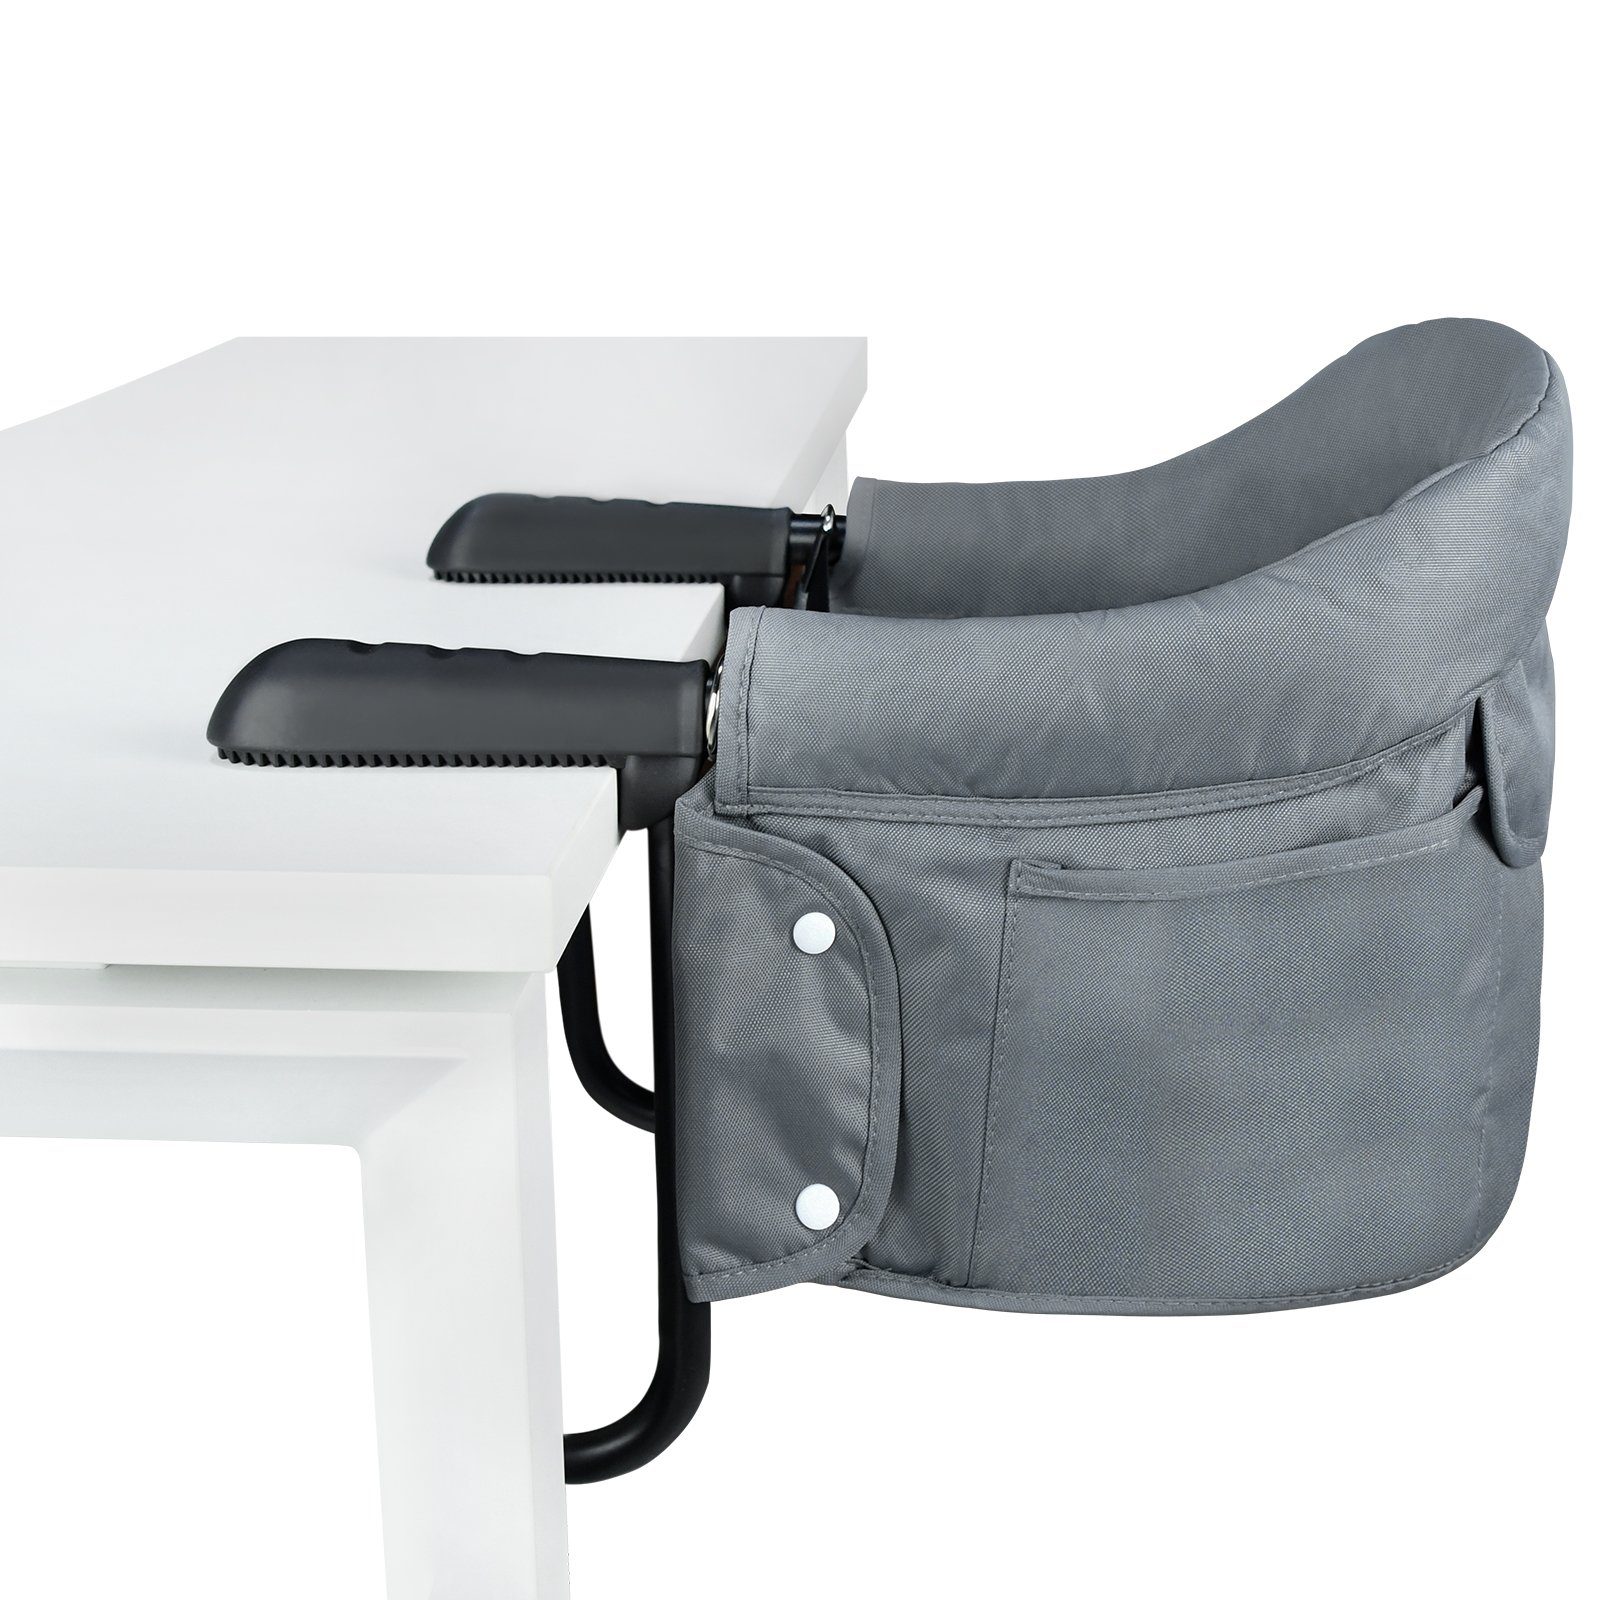 Faltbar Hochstuhl, Babysitz Tragbares Booster Tischsitz Baby Füllbares Sitzerhöhung Sitz AUFUN Und